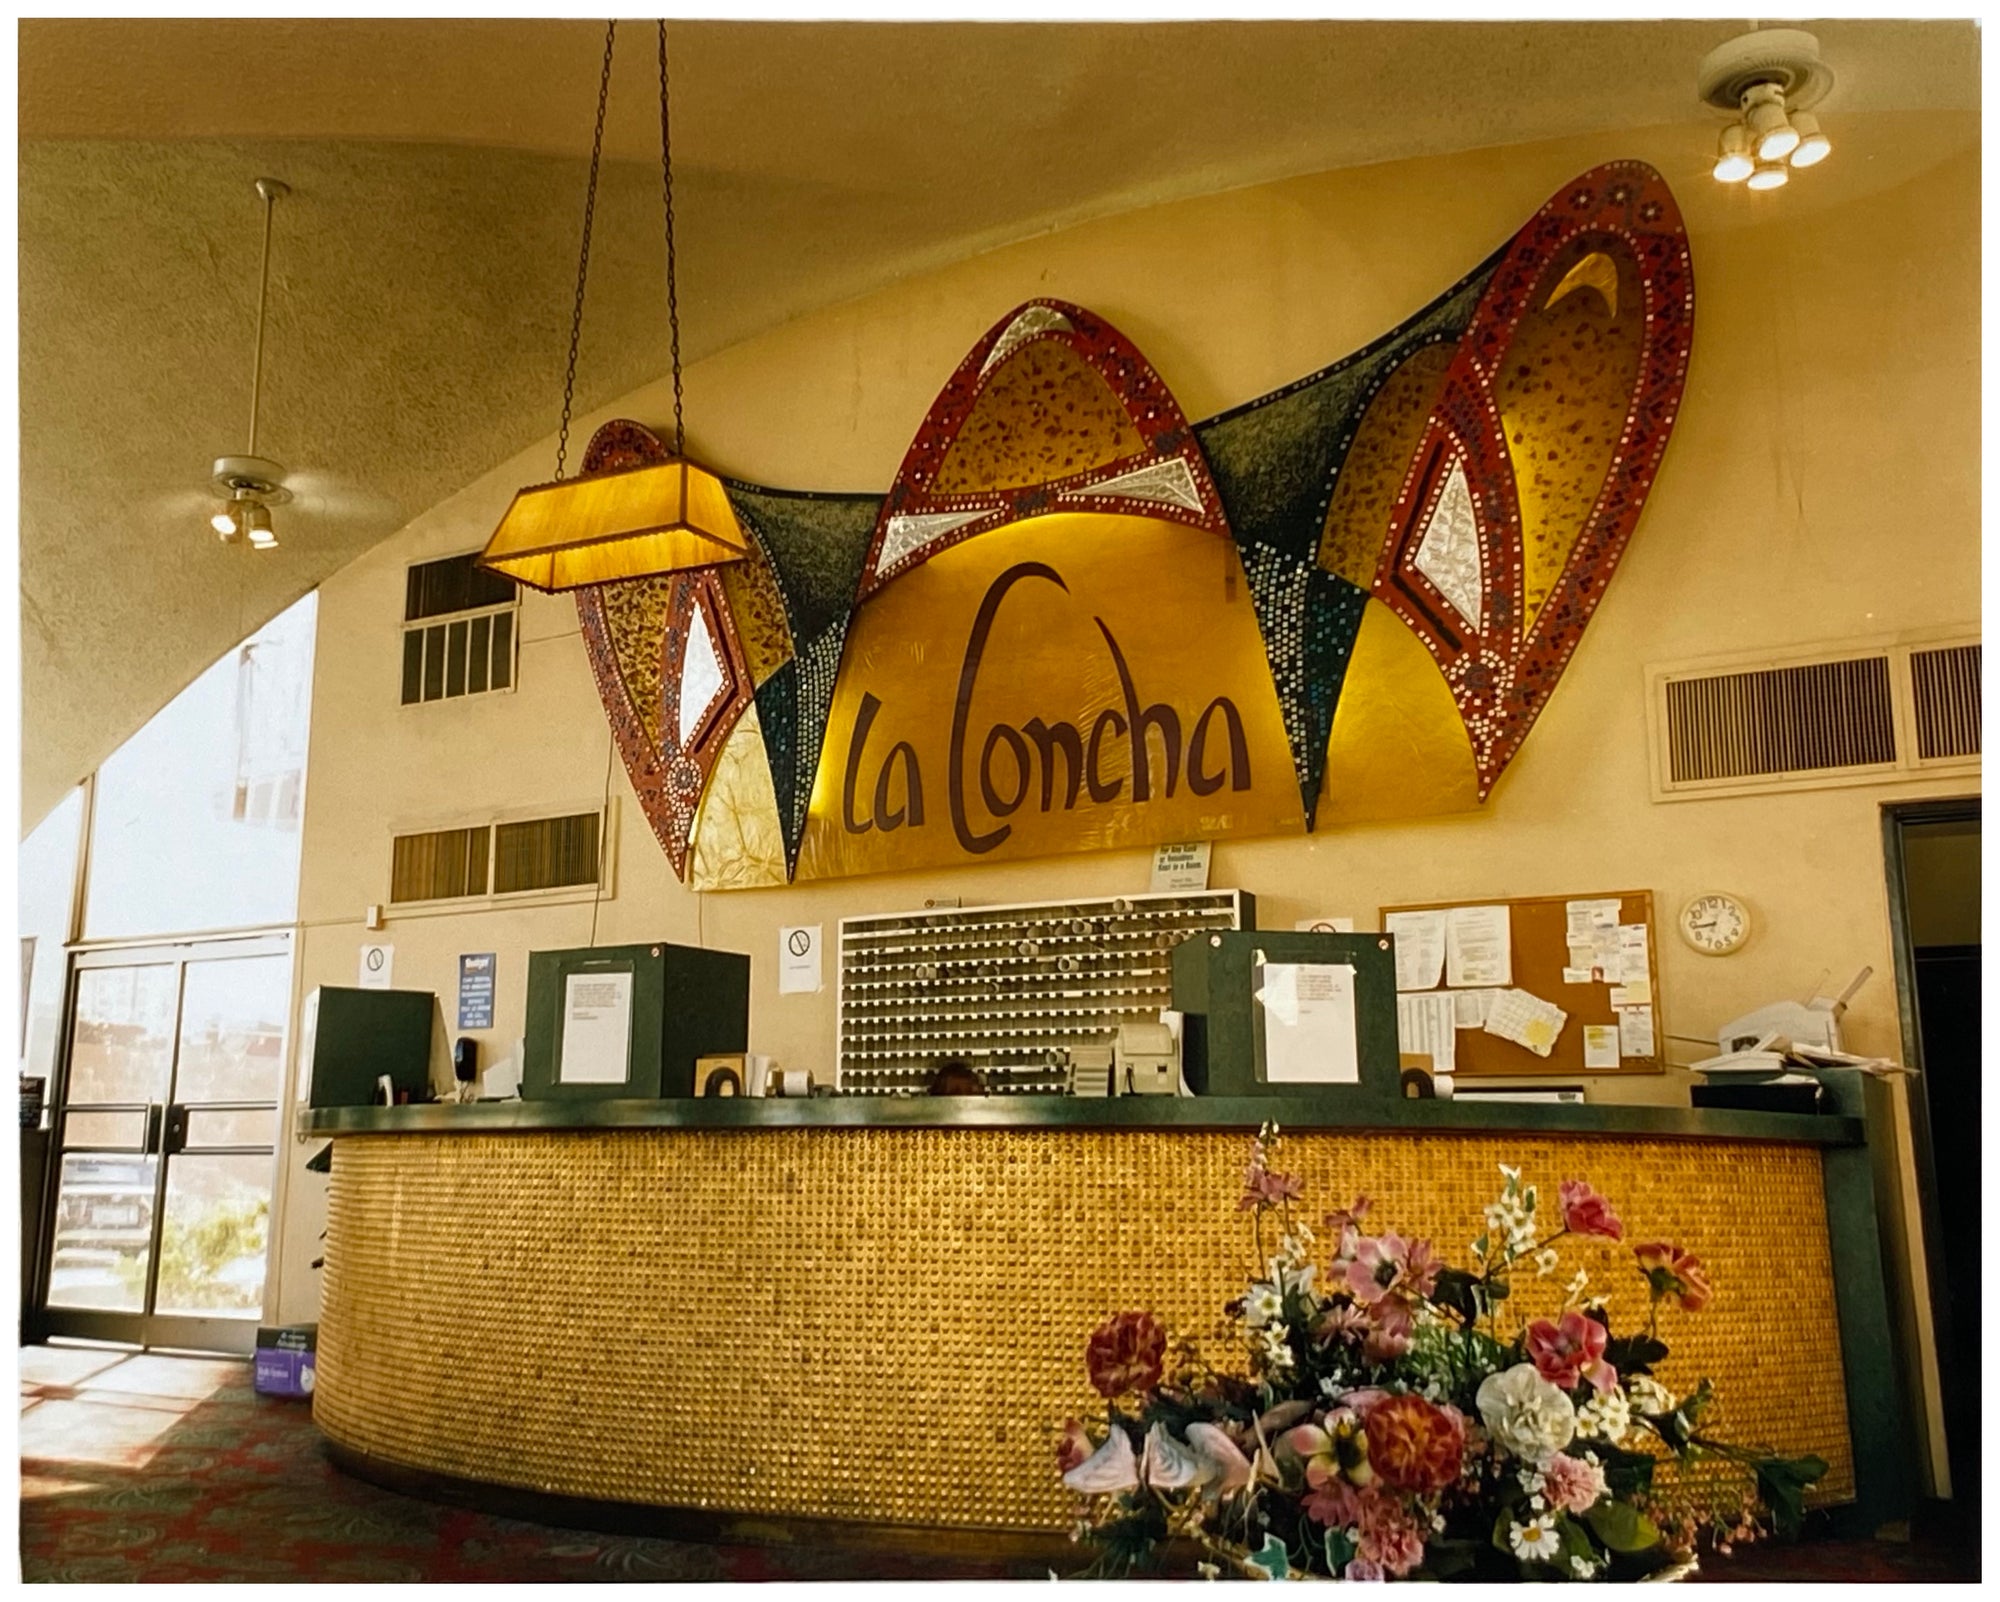 Reception - La Concha Motel, Las Vegas, 2000